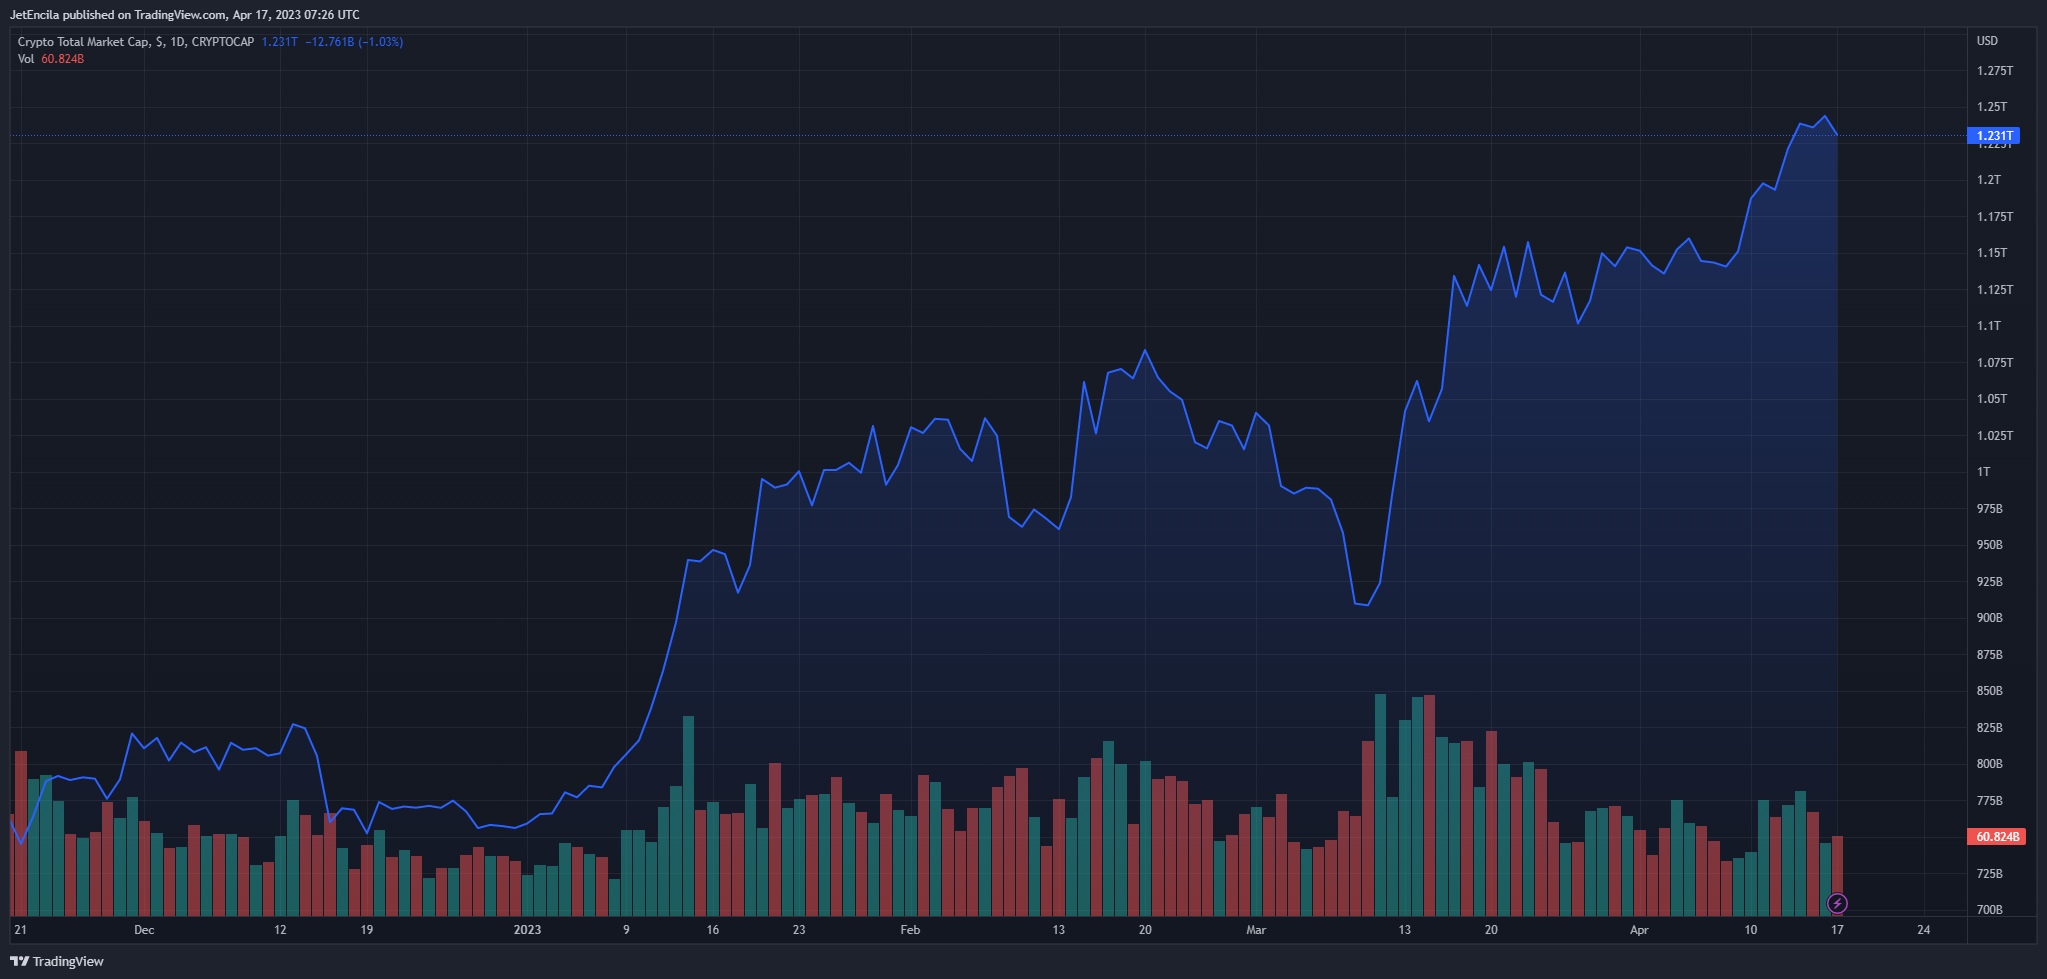 Vốn hóa thị trường của tiền điện tử hiện đang đạt 1.23 nghìn tỷ đô la theo biểu đồ hàng ngày trên TradingView.com